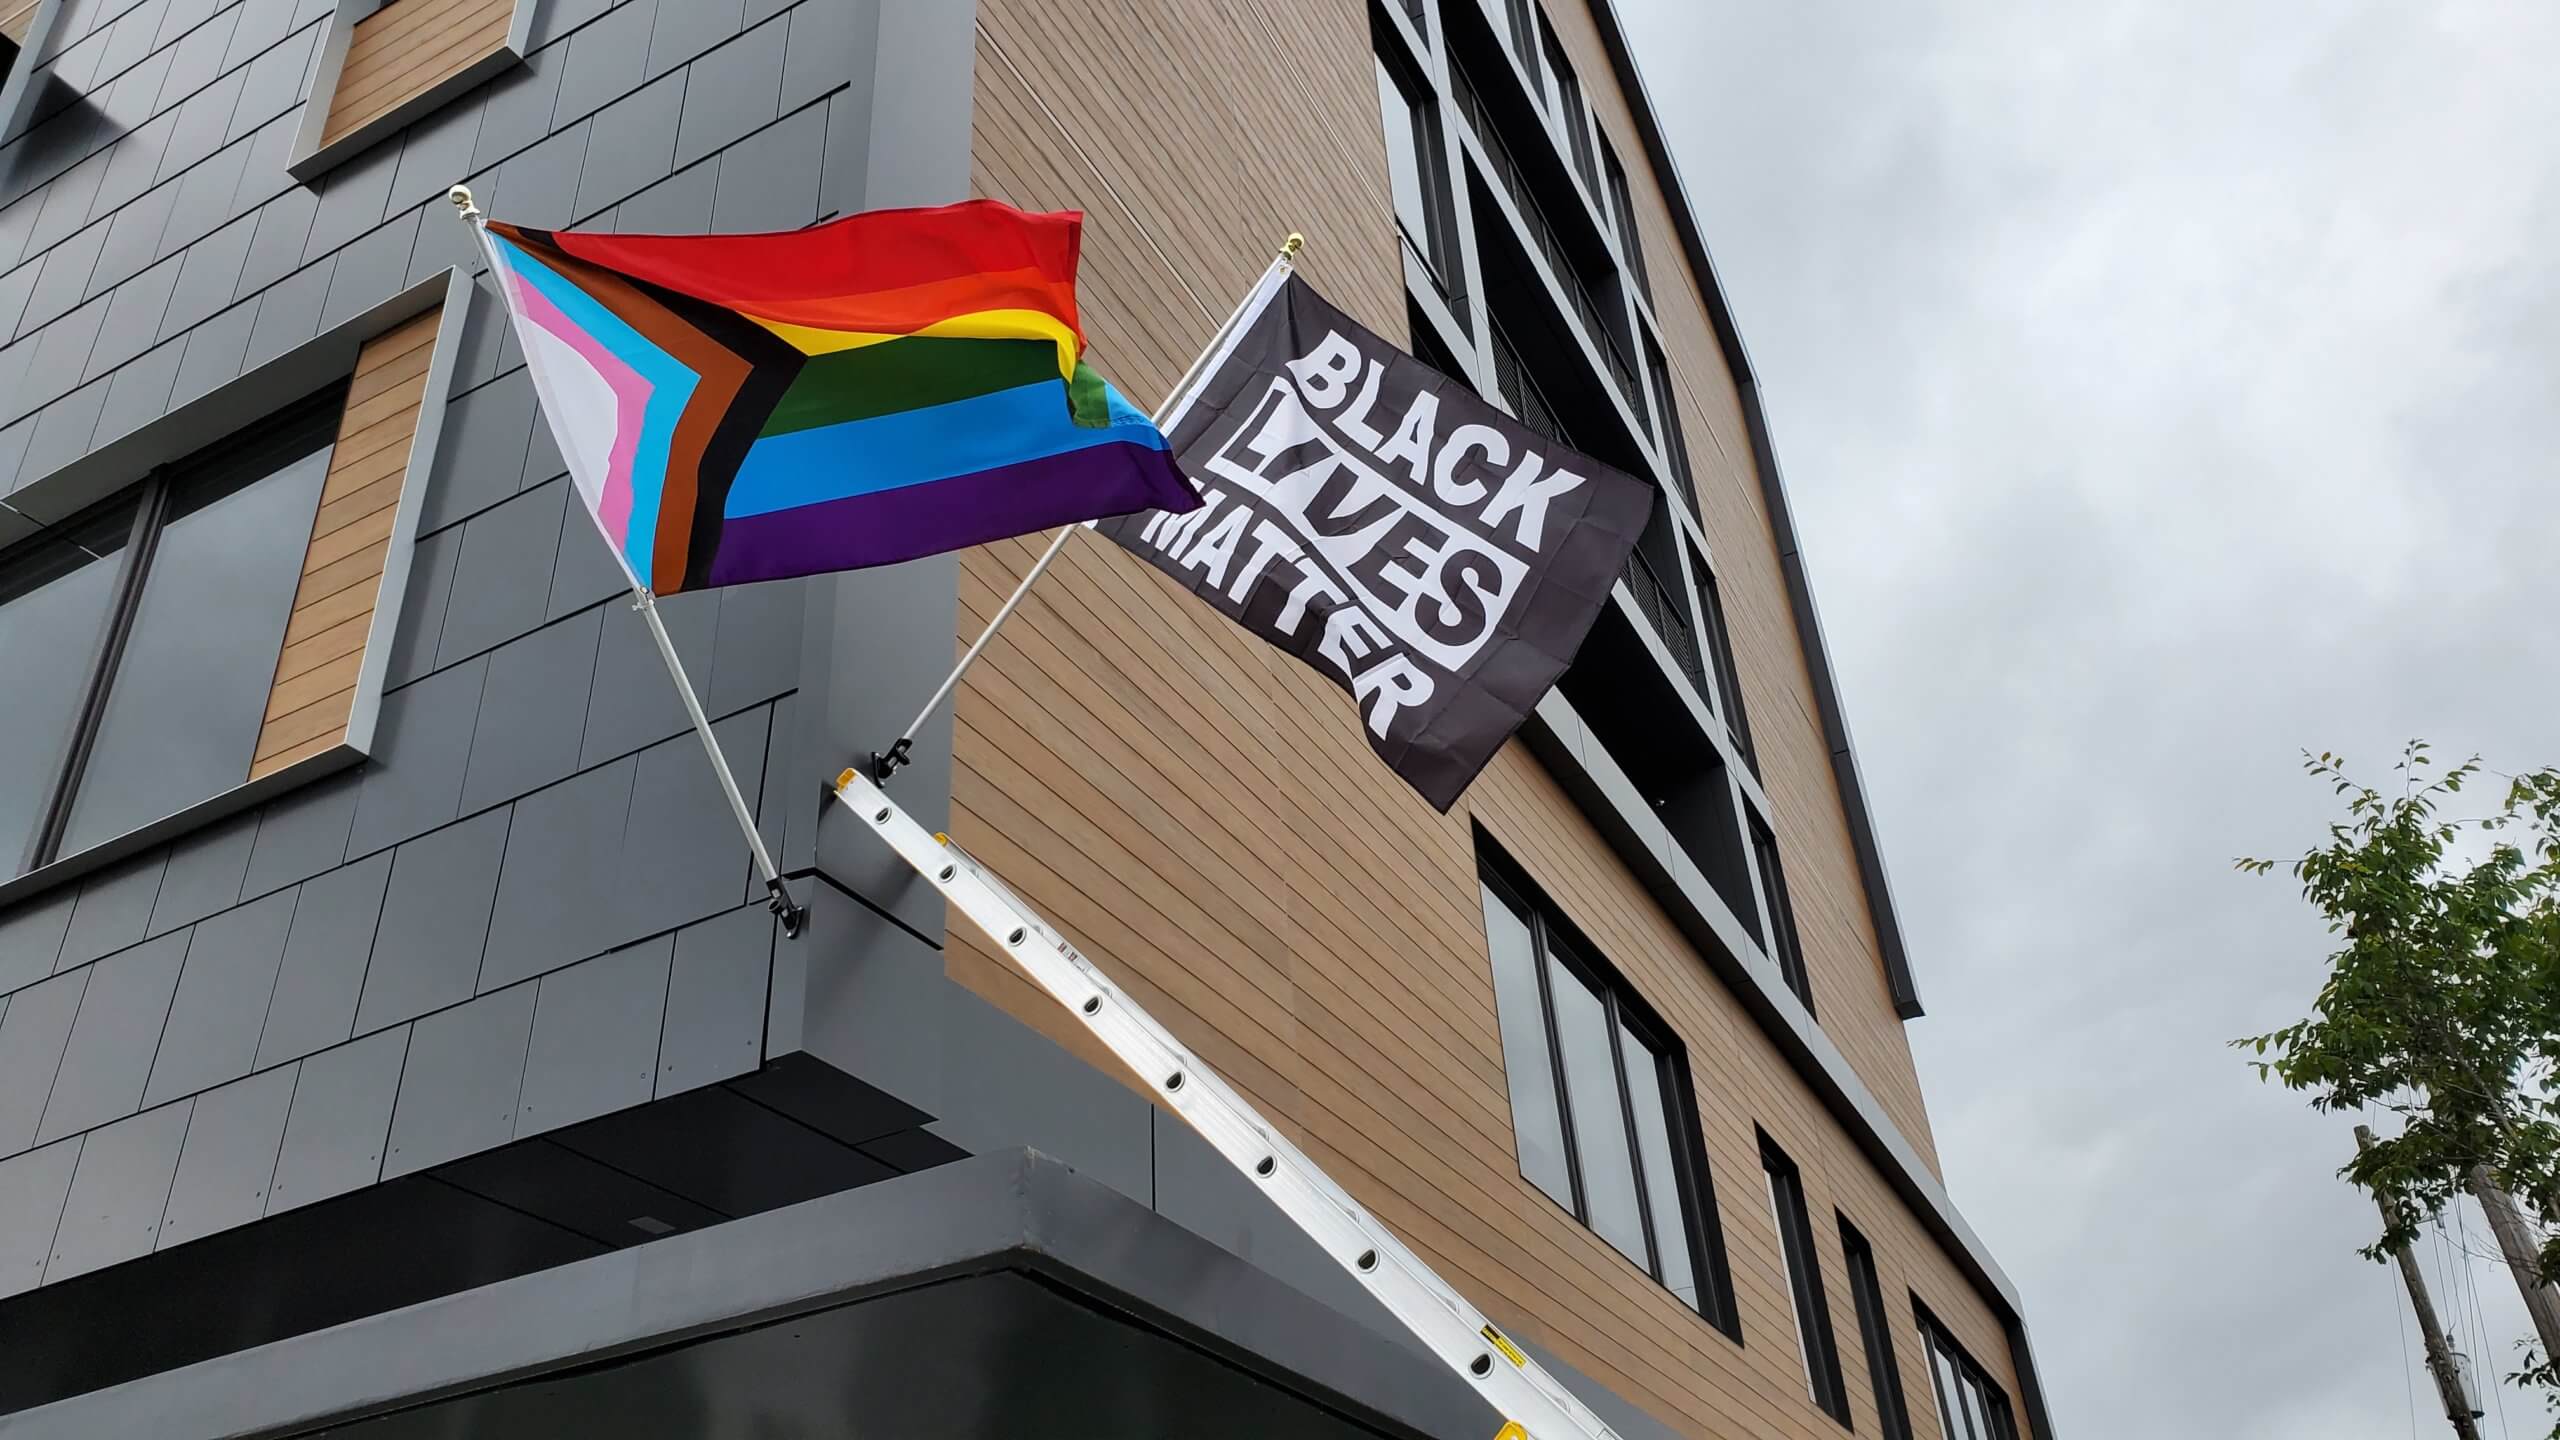 Pride flag and Black Lives Matter flag